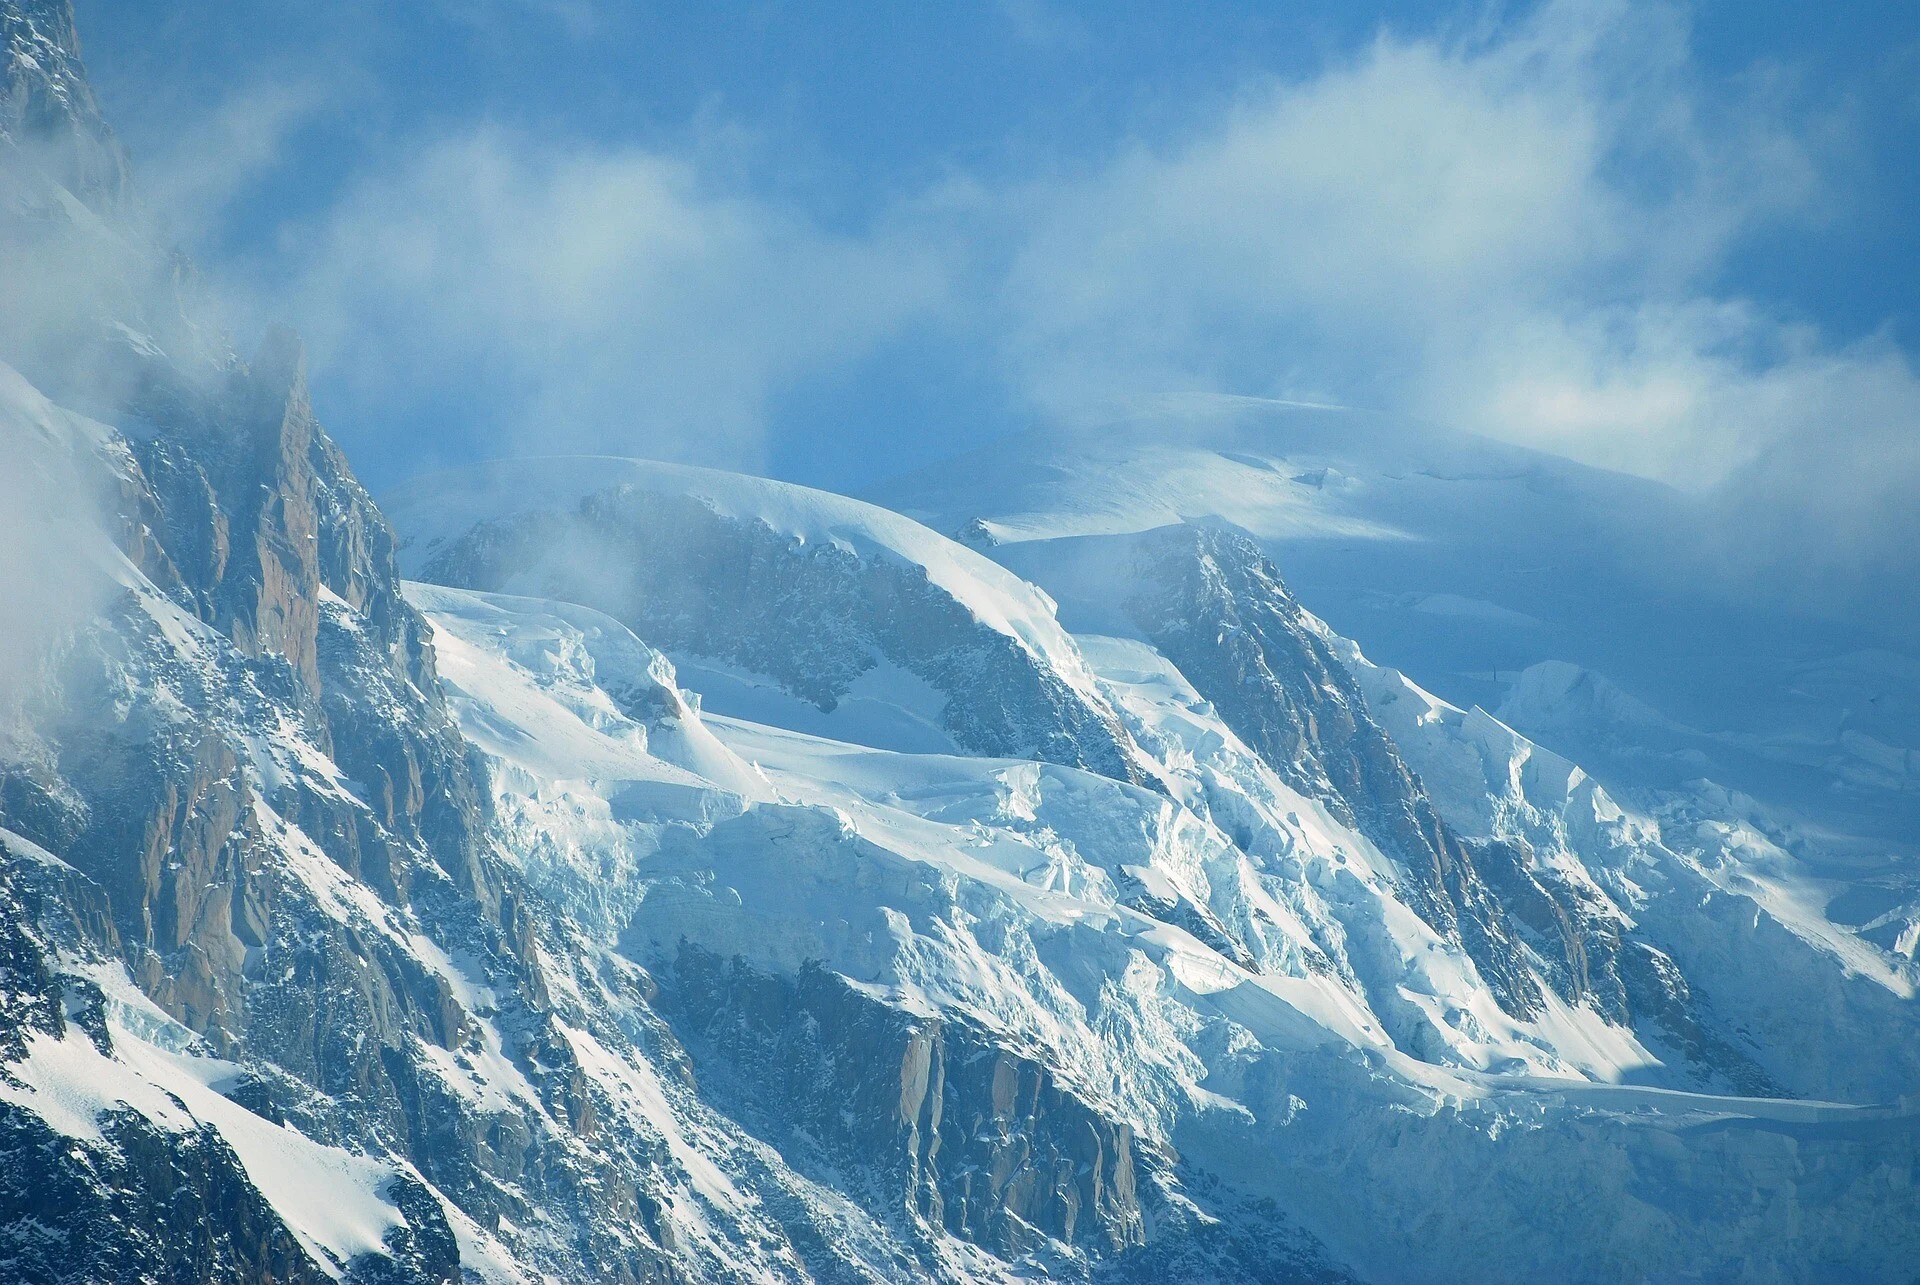 Ελβετία: Σκελετοί και χαμένα αεροσκάφη αποκαλύπτονται από τους παγετώνες που λιώνουν